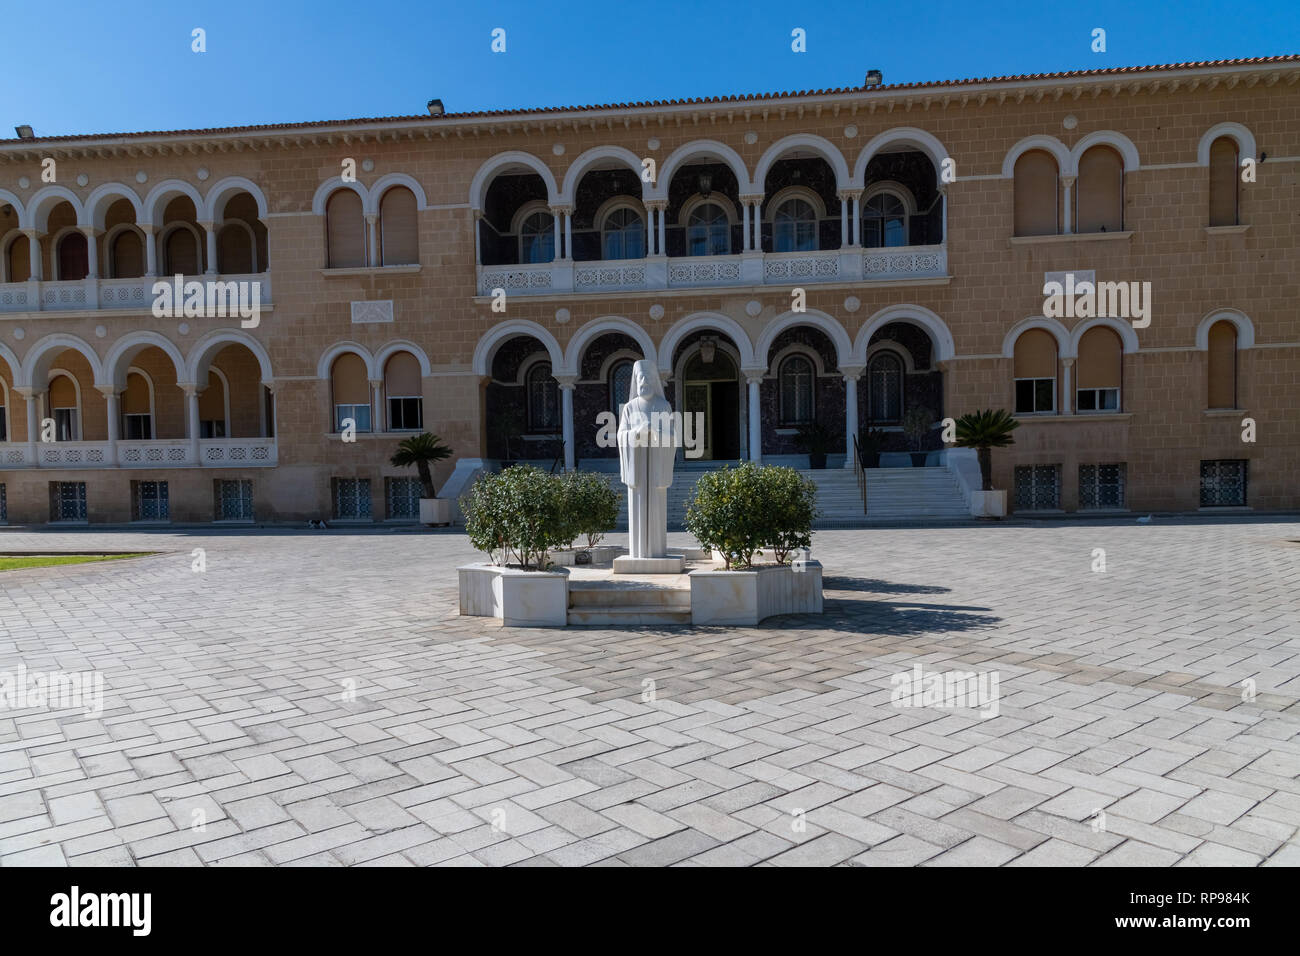 Chypre, Nicosie, en grec, de la vieille ville, monument de l'archevêque Makarios et palais archiépiscopal Banque D'Images